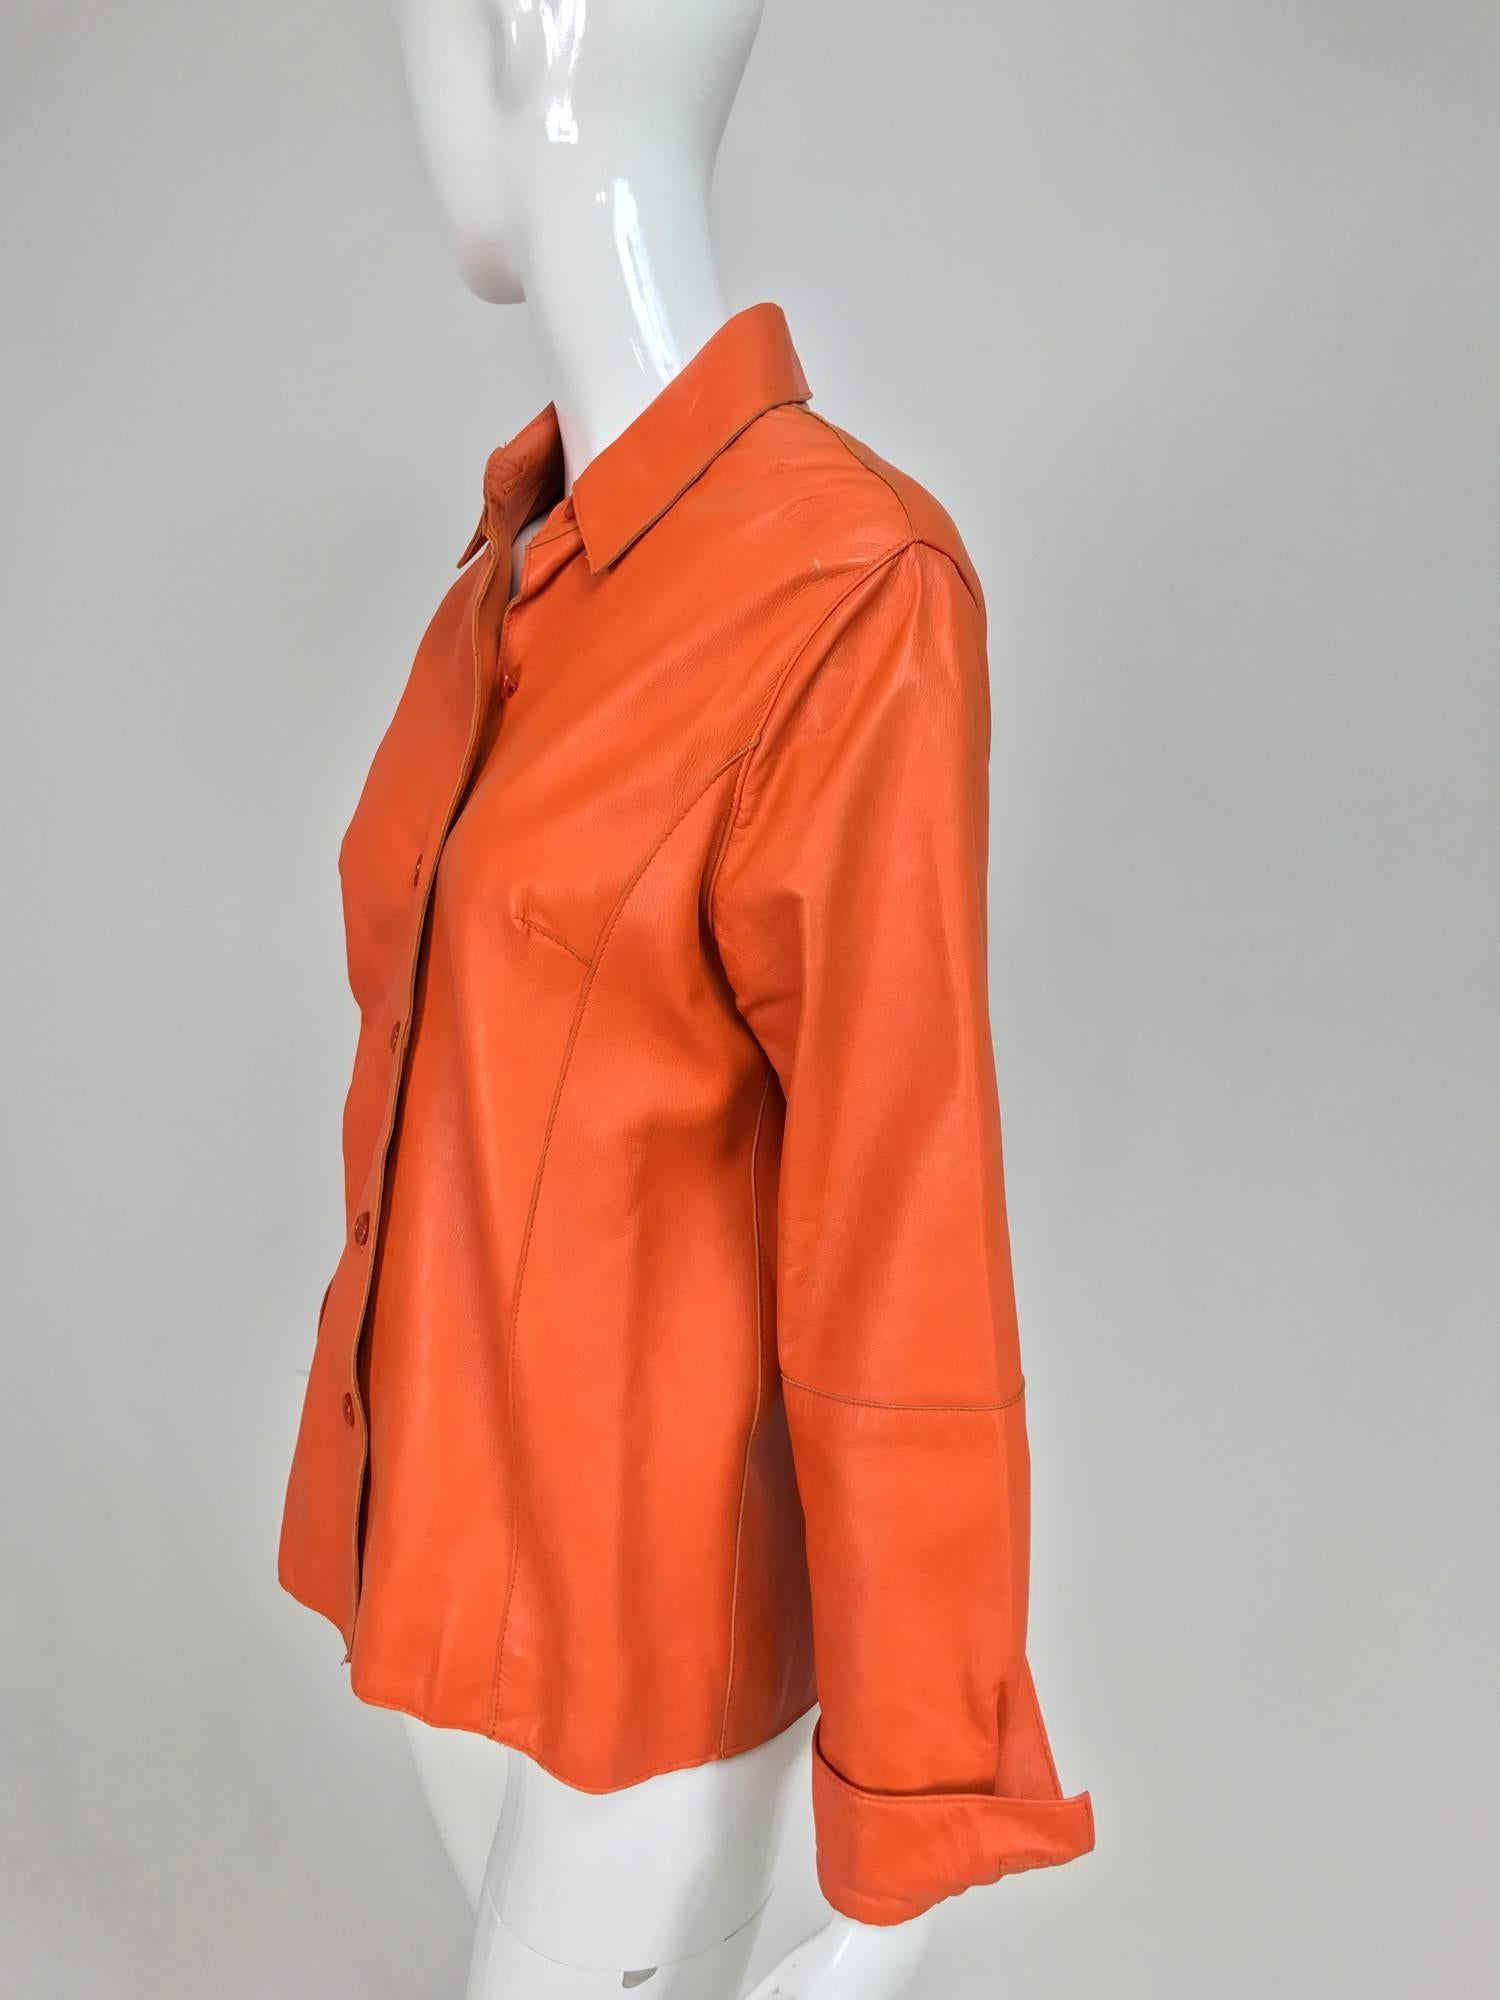 orange leather shirt